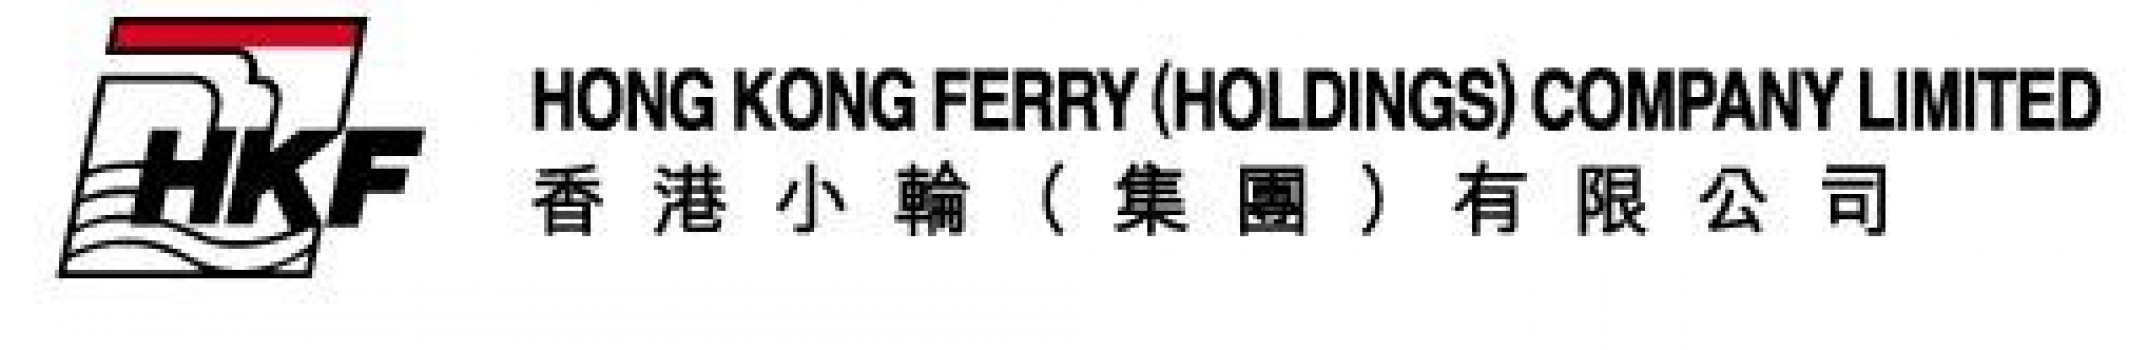 Hong Kong Ferry (Holdings) Company Ltd